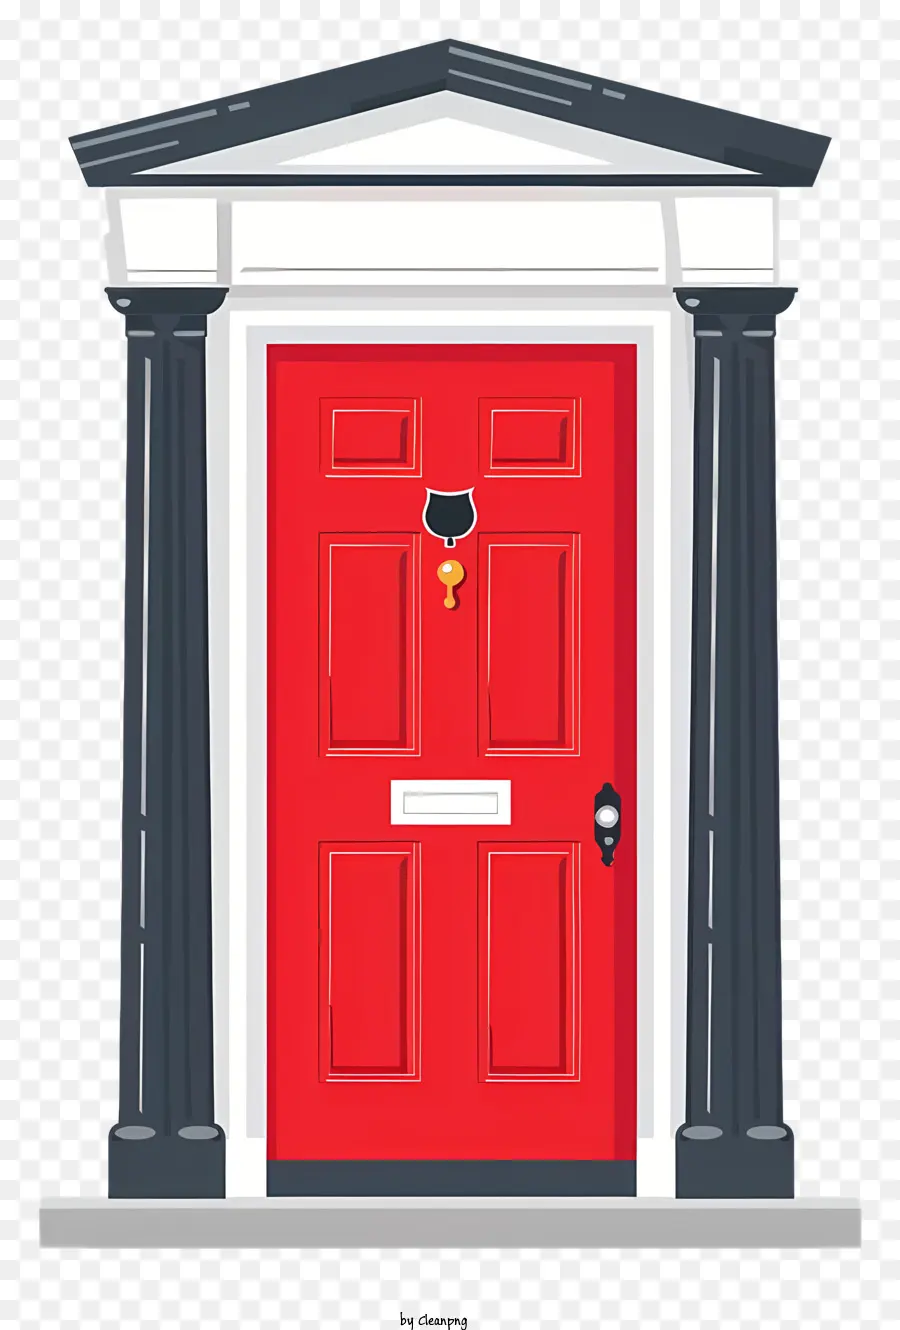 door red front door wood door stone pillars key attached to door